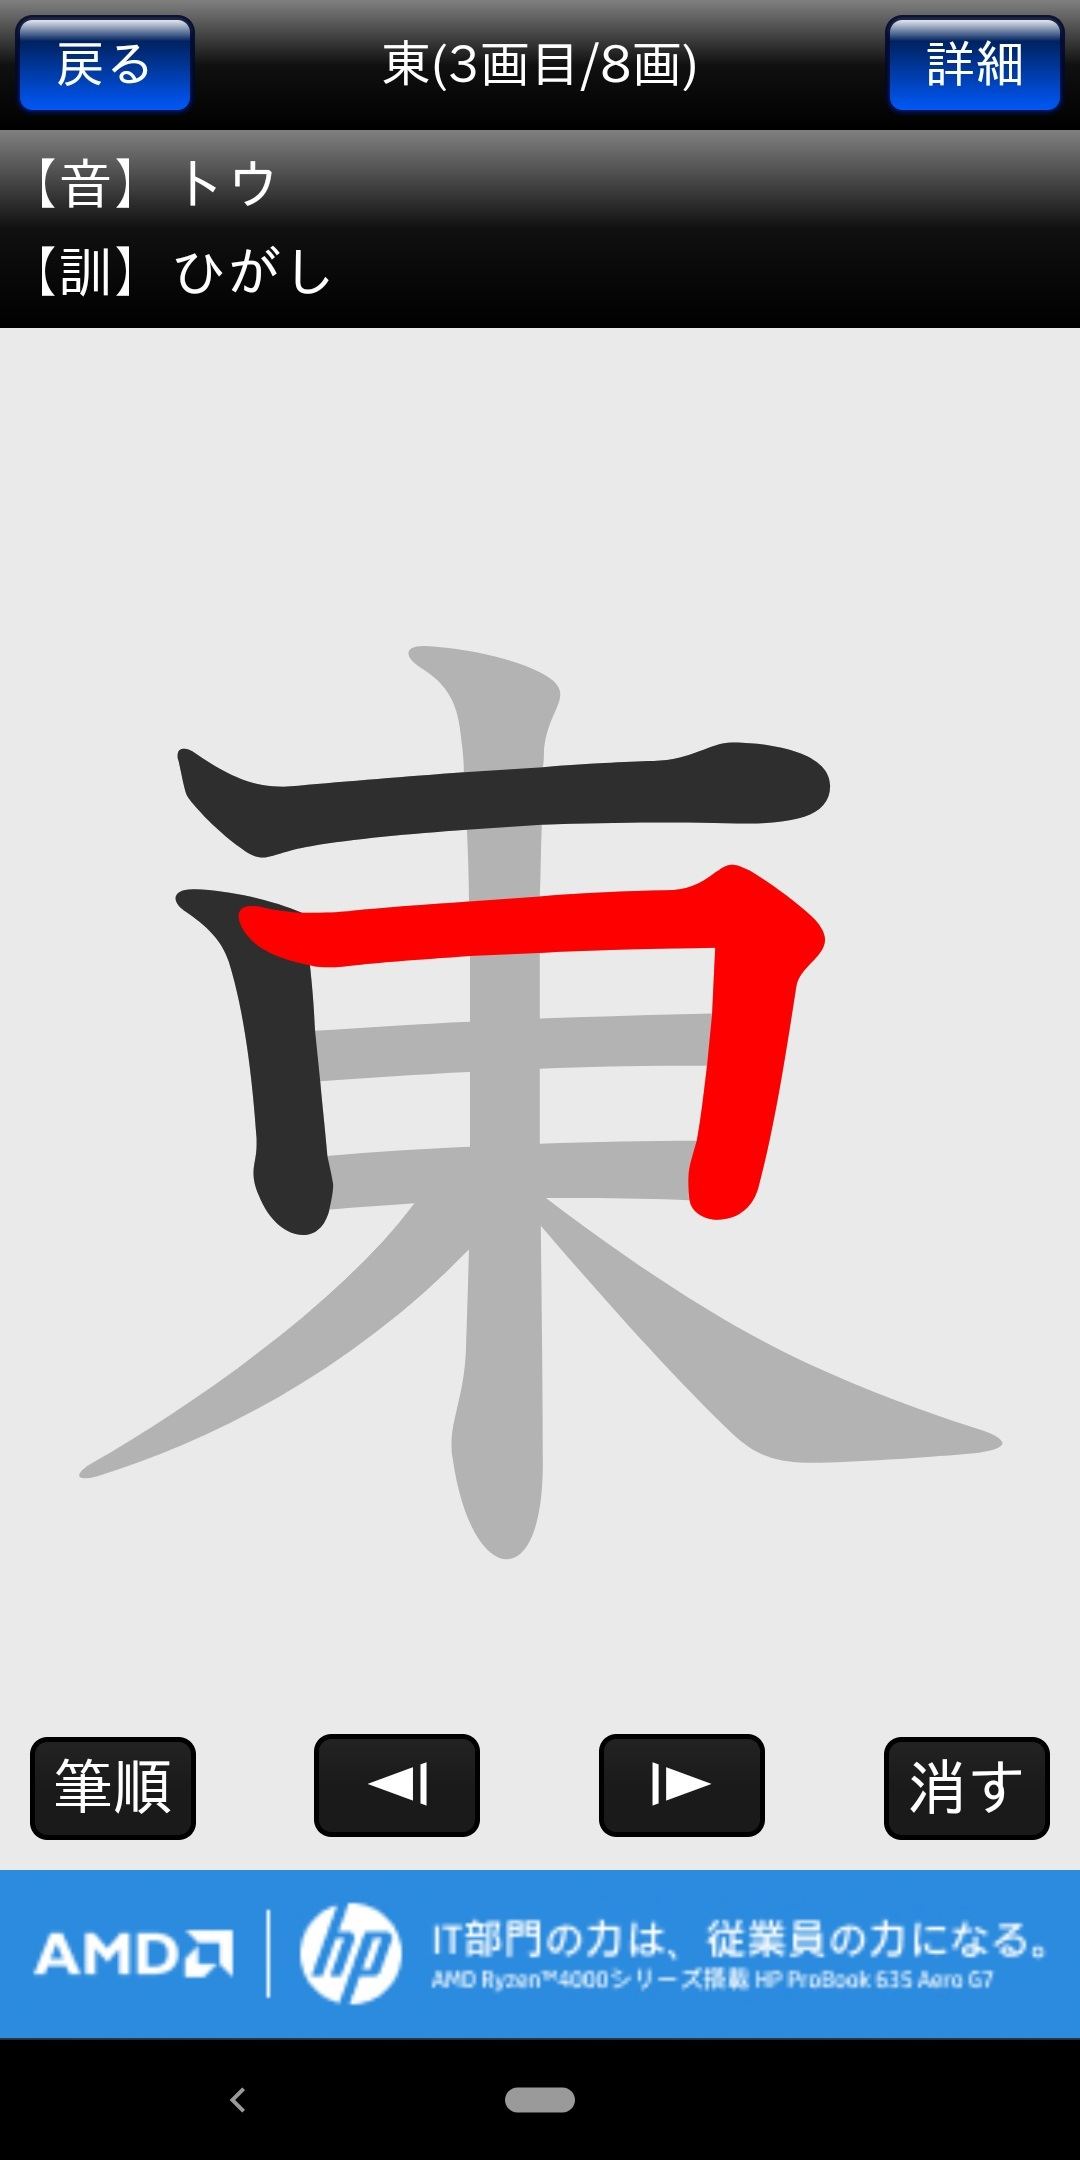 毎日がアプリディ 読めない漢字を手書きで検索 常用漢字筆順辞典 マイナビニュース